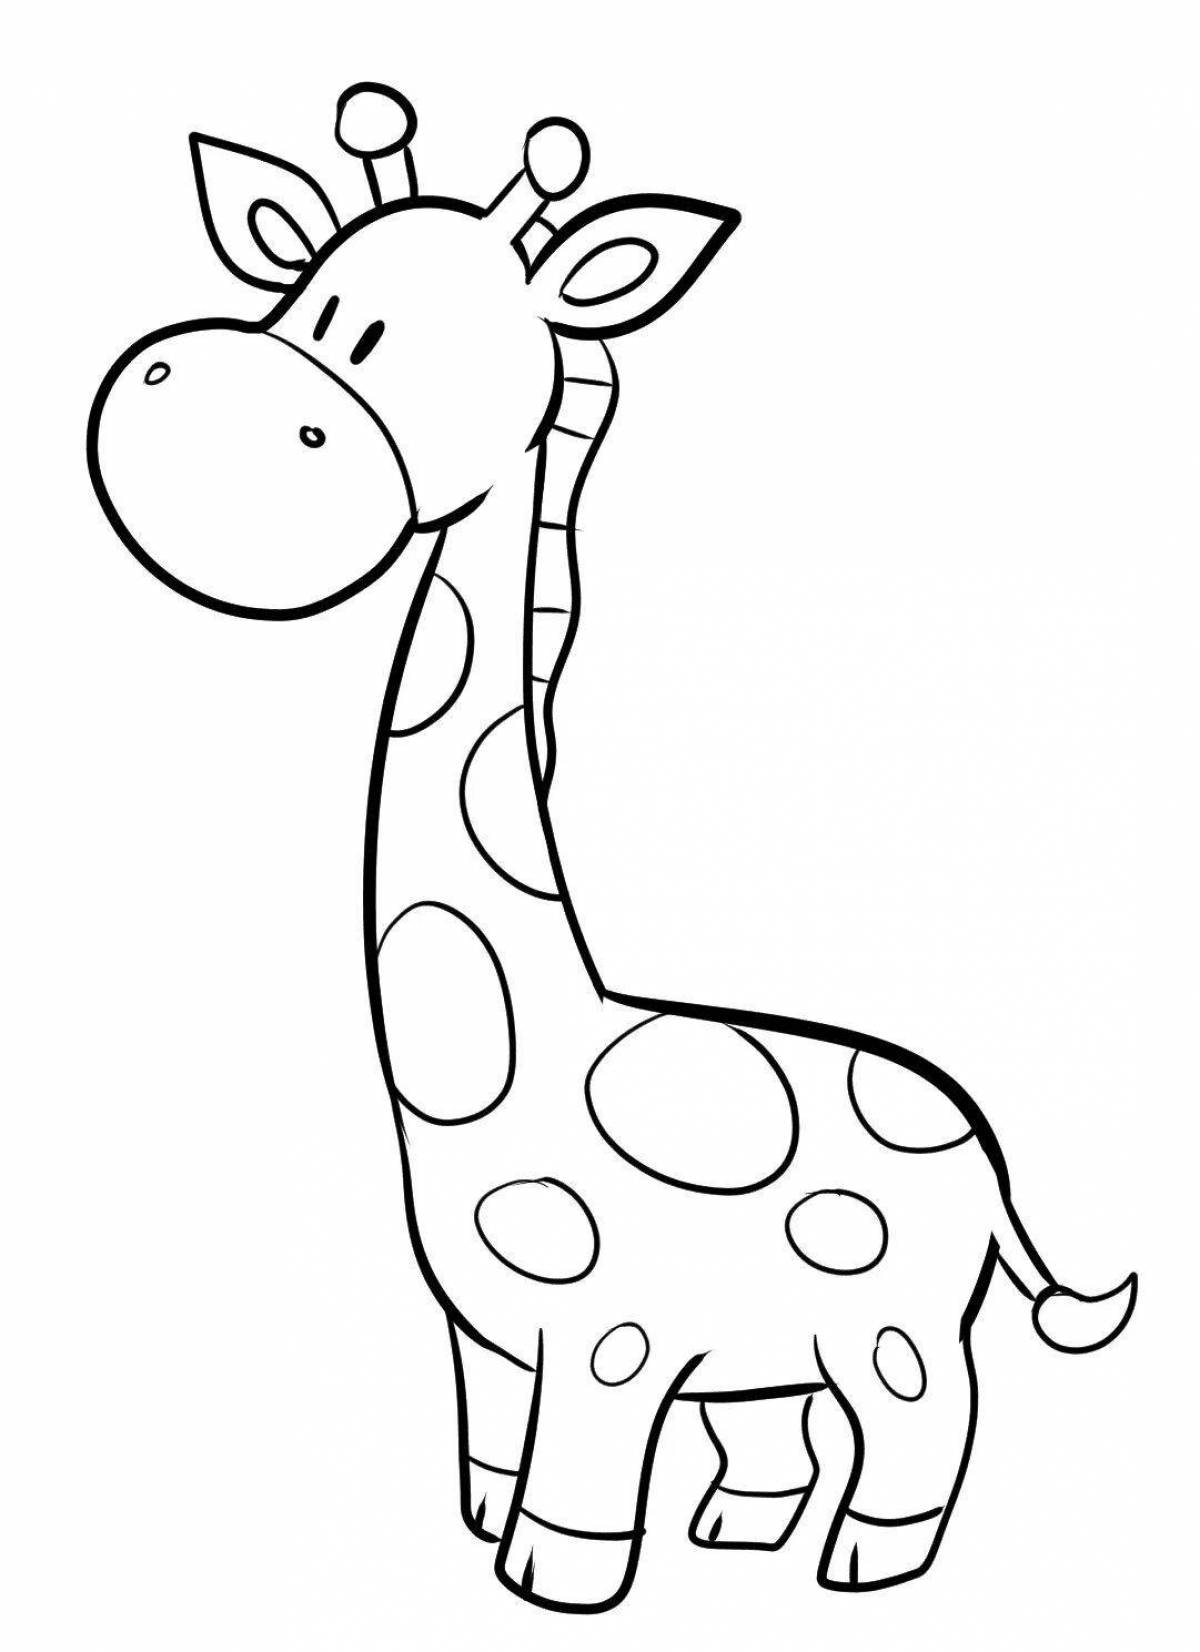 Великолепная раскраска жираф для детей